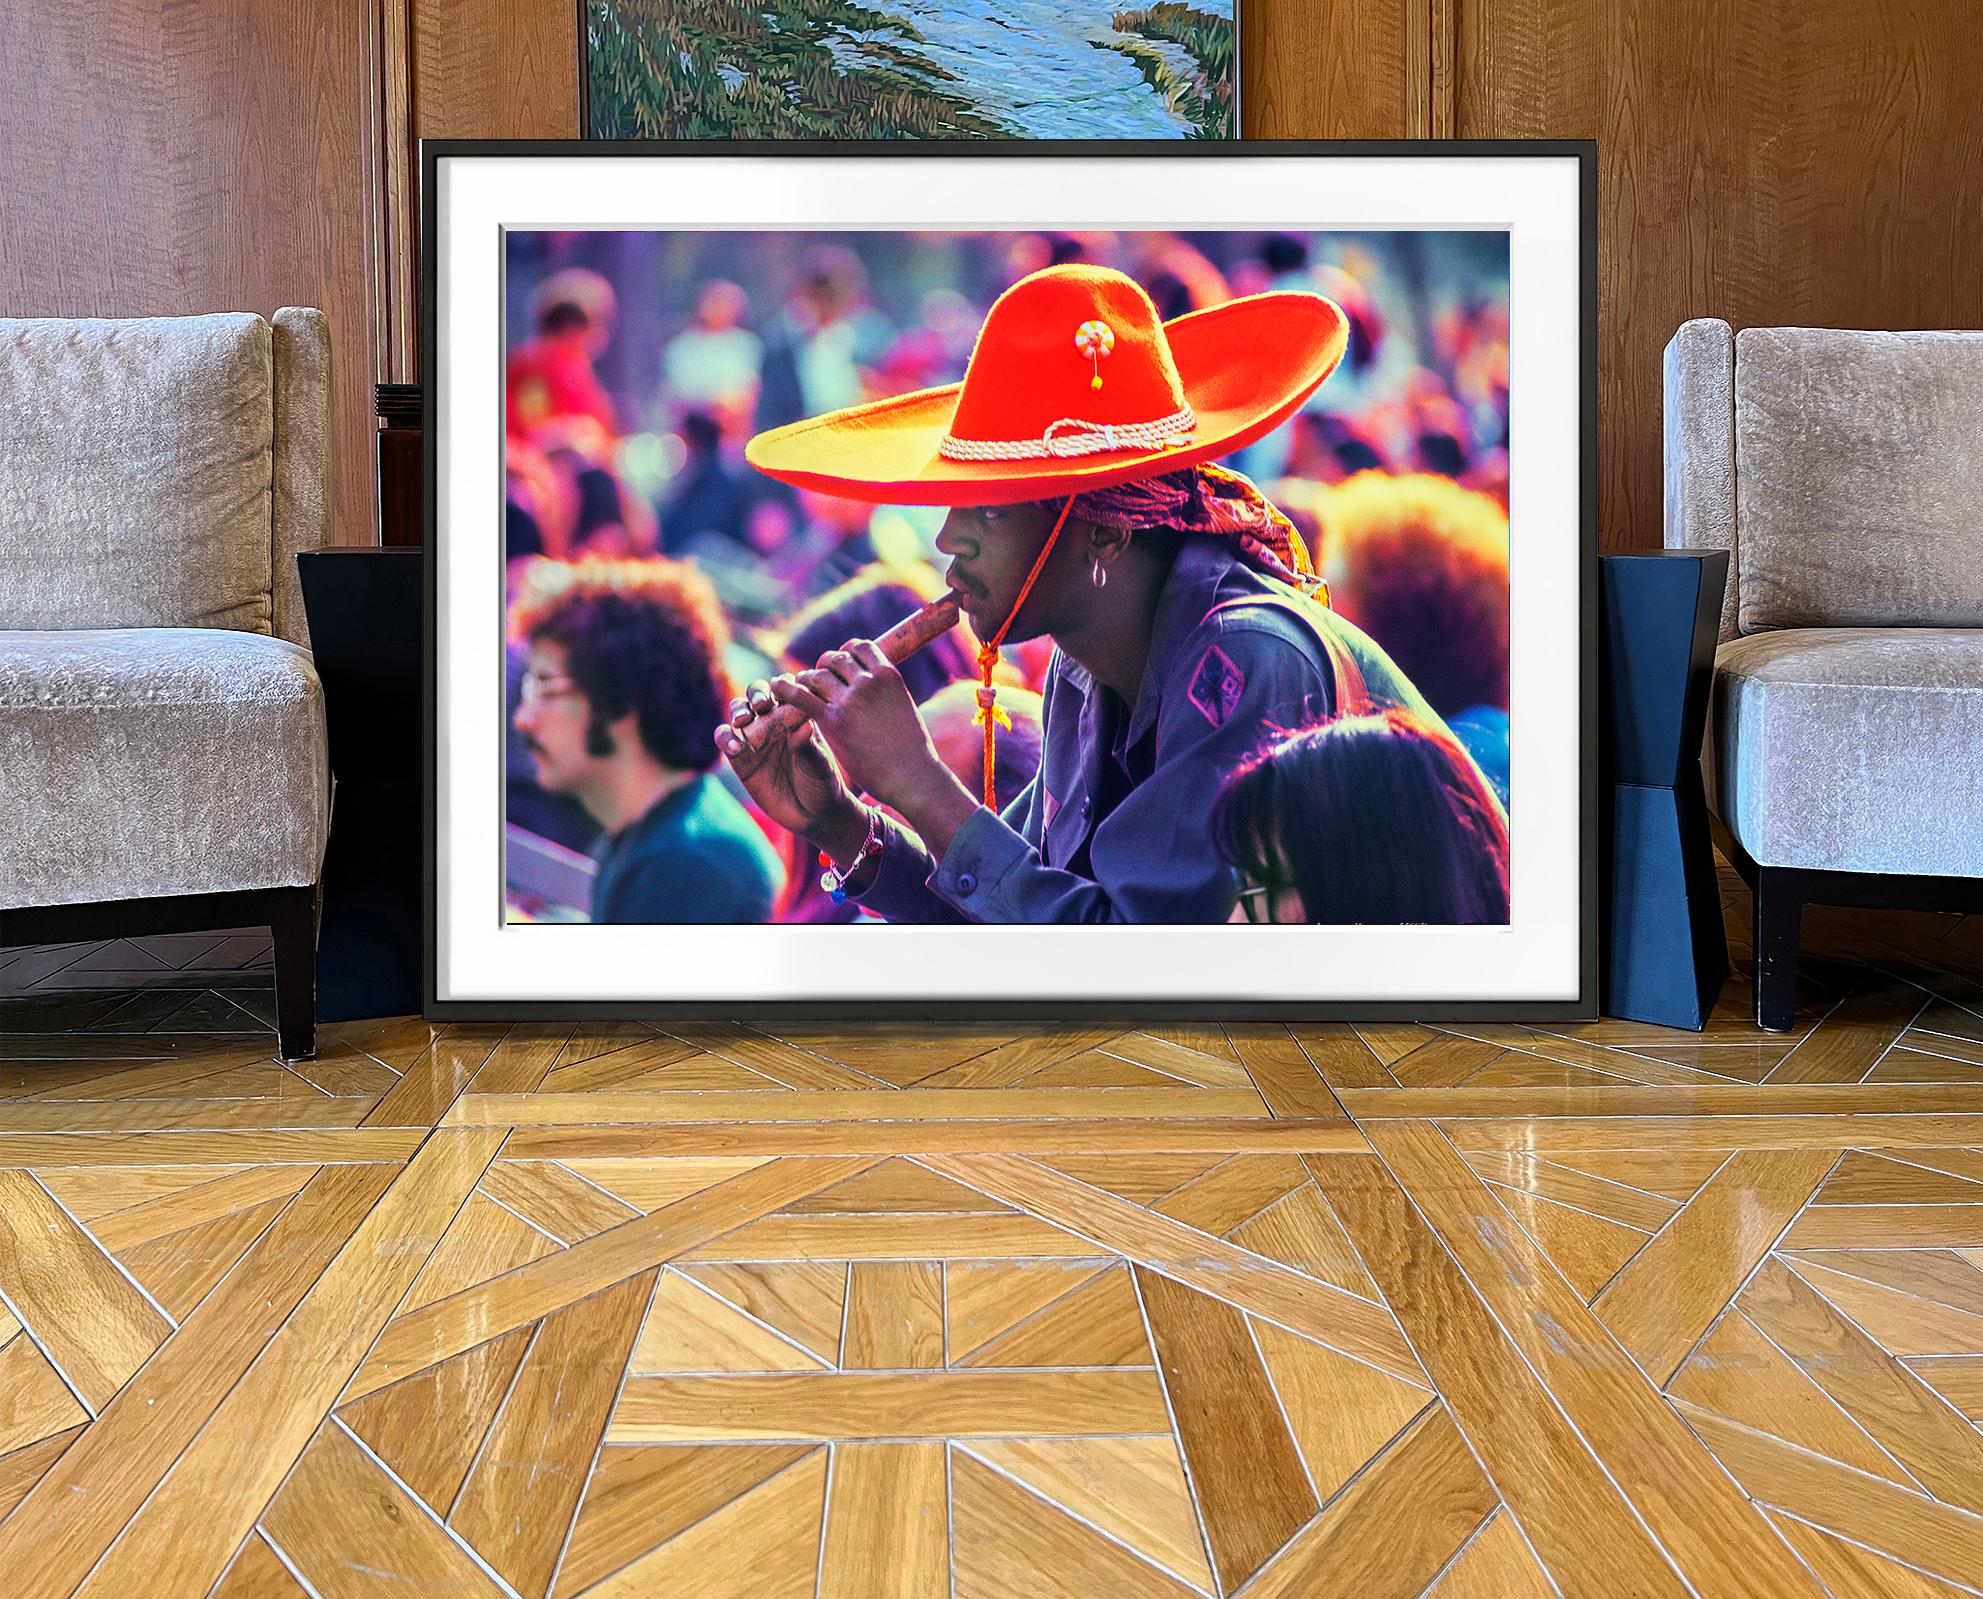  Ein schwarzer Hippie mit einem majestätischen roten Sombrero wird beim Flötenspiel auf einem Musikfestival im Central Park 1969 aufgenommen.  Im selben Jahr feierte die jugendliche 